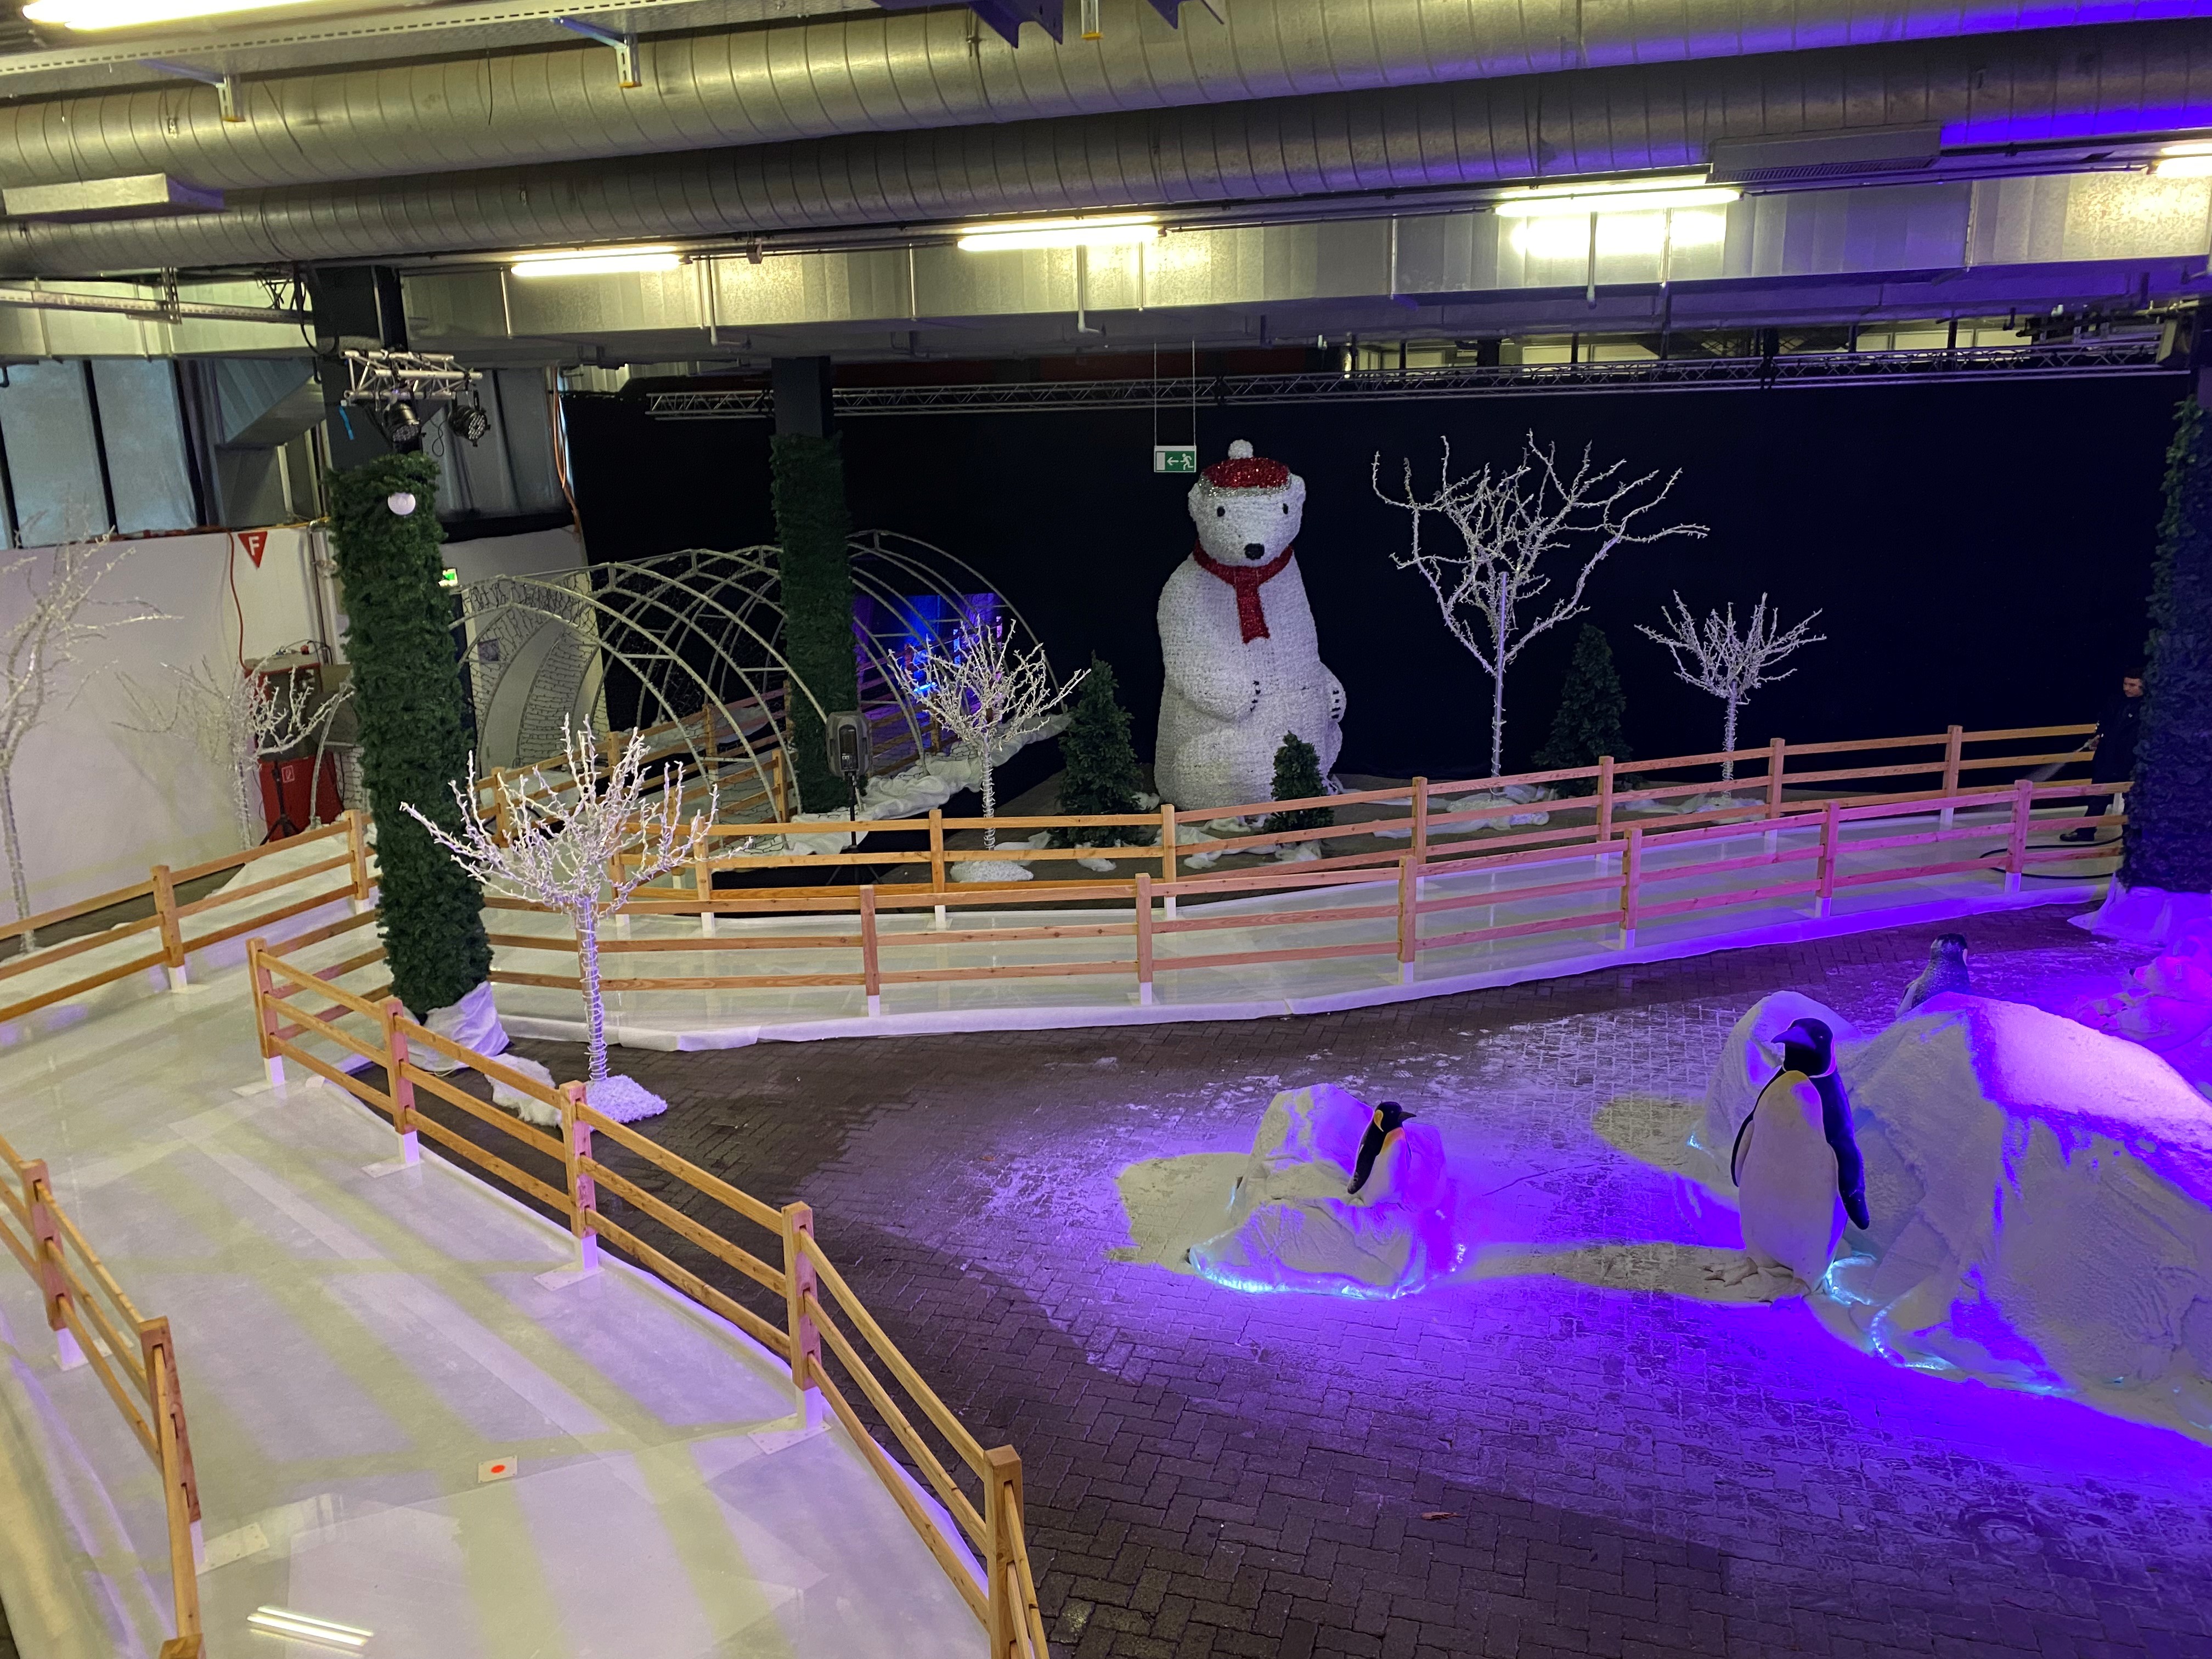 La nouvelle attraction du marché de Noël de Montreux ouvre ses portes ce soir